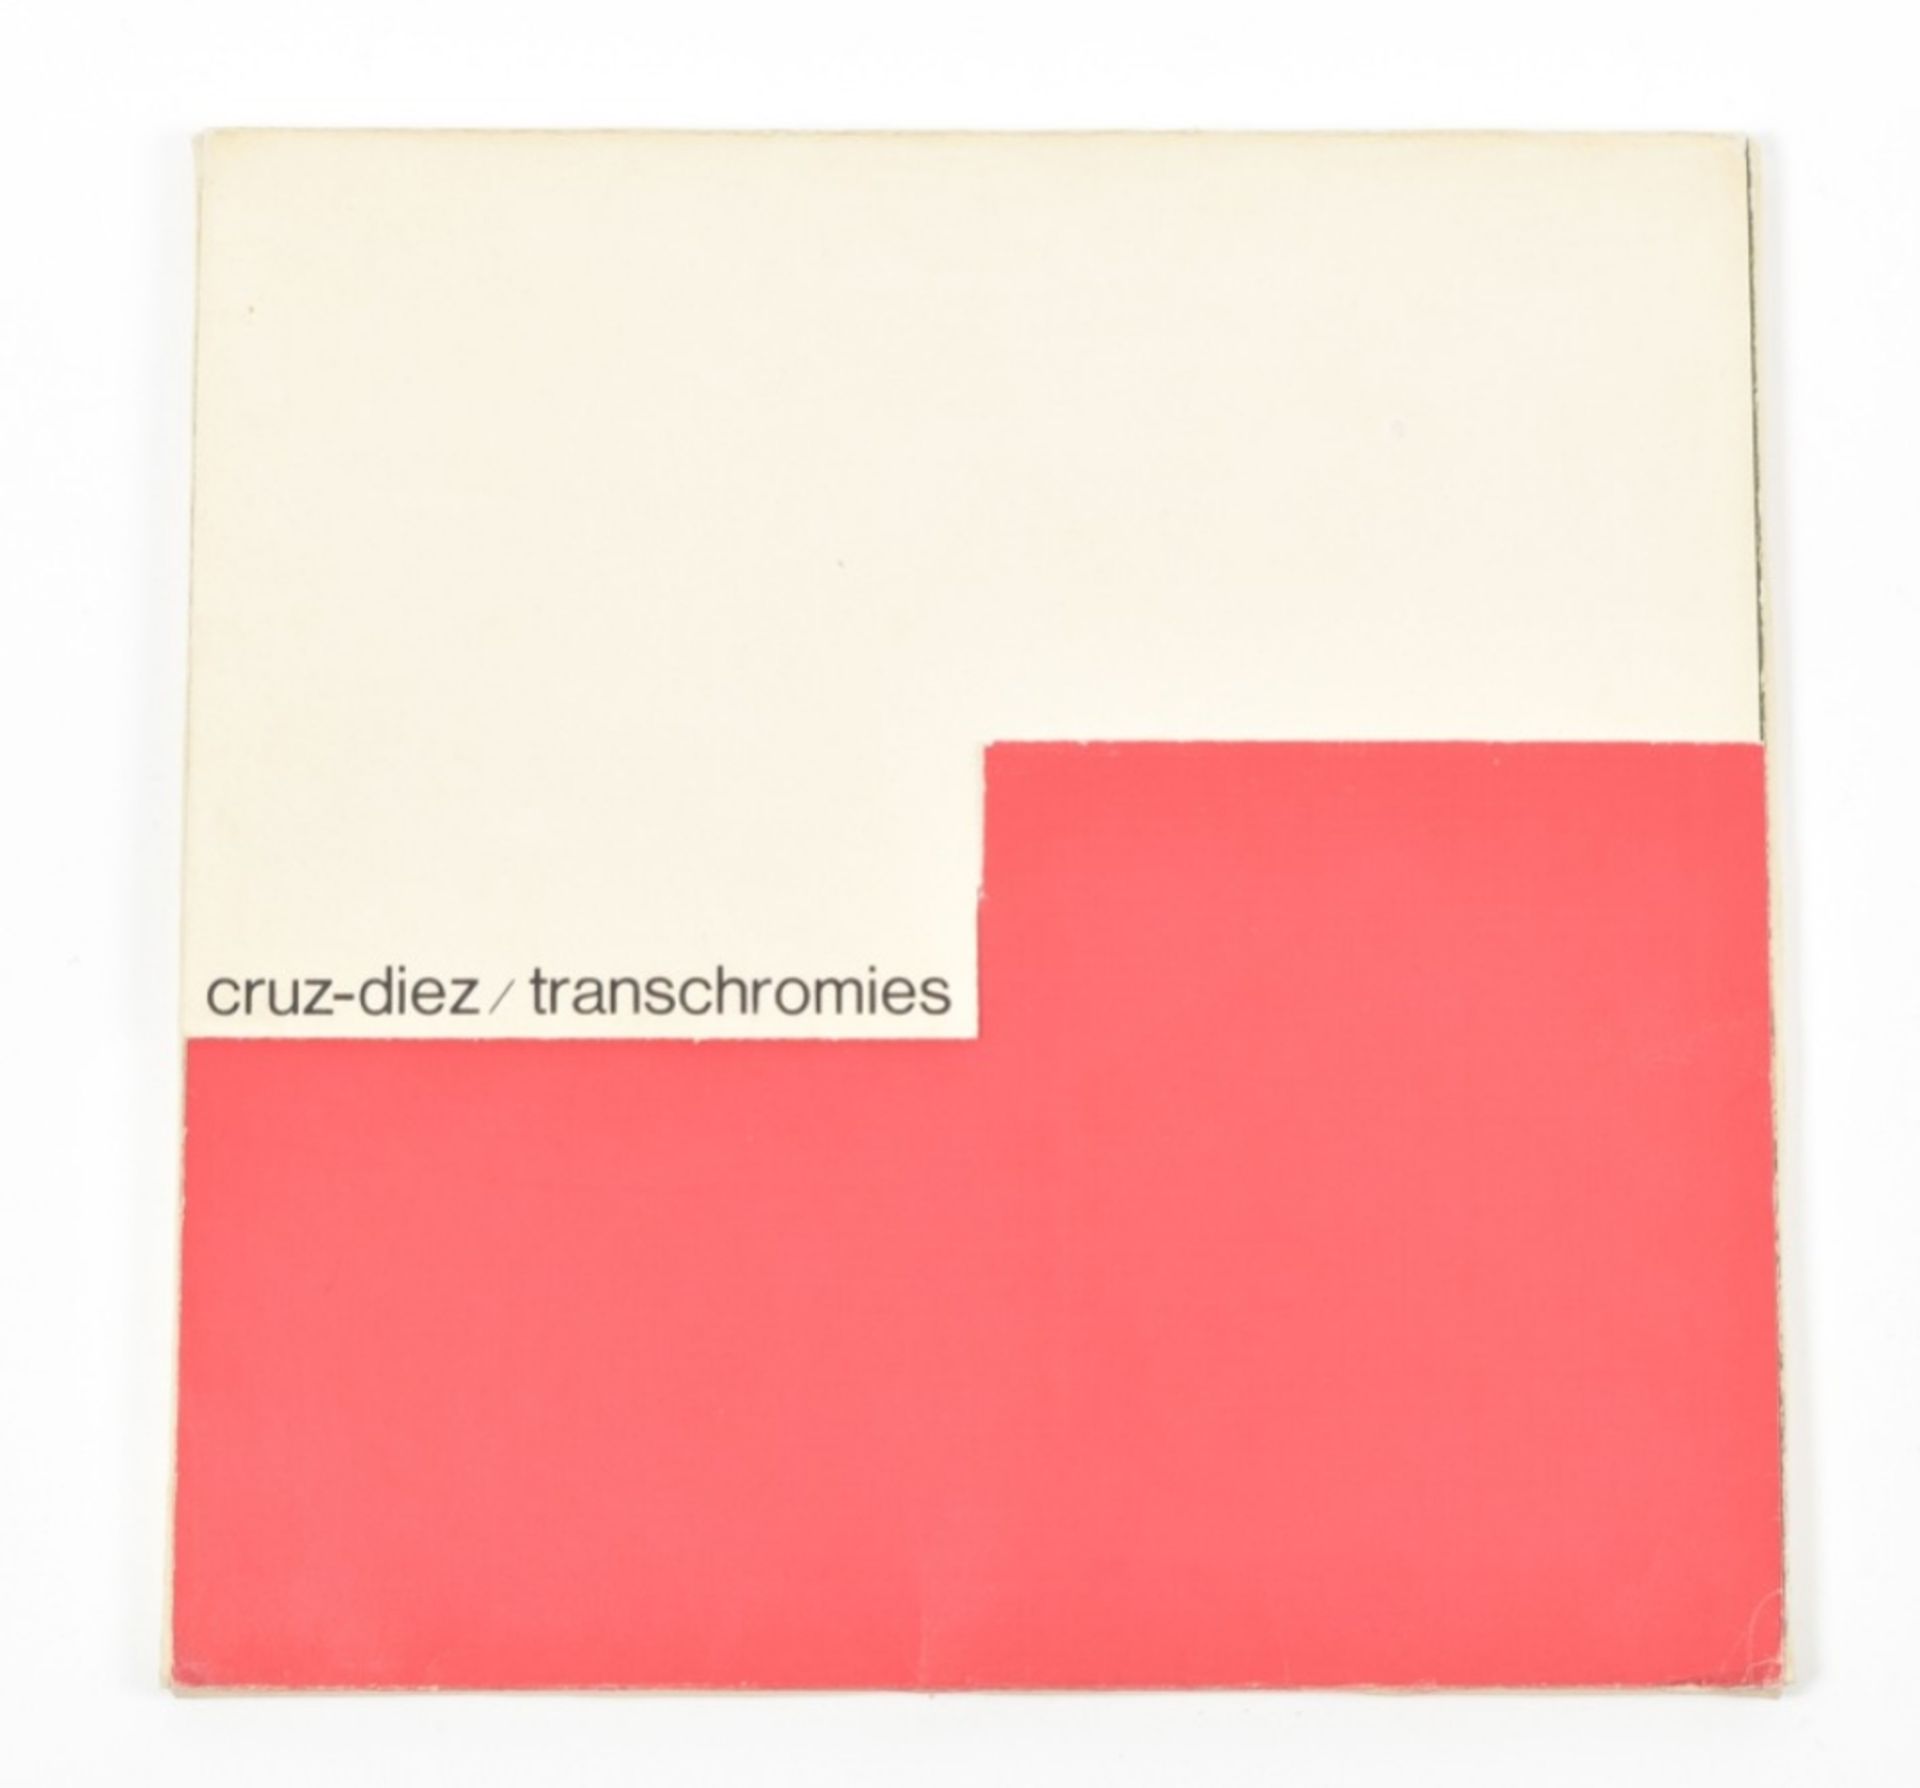 [s and 1970s] Carlos Cruz-Diez, Transchromies